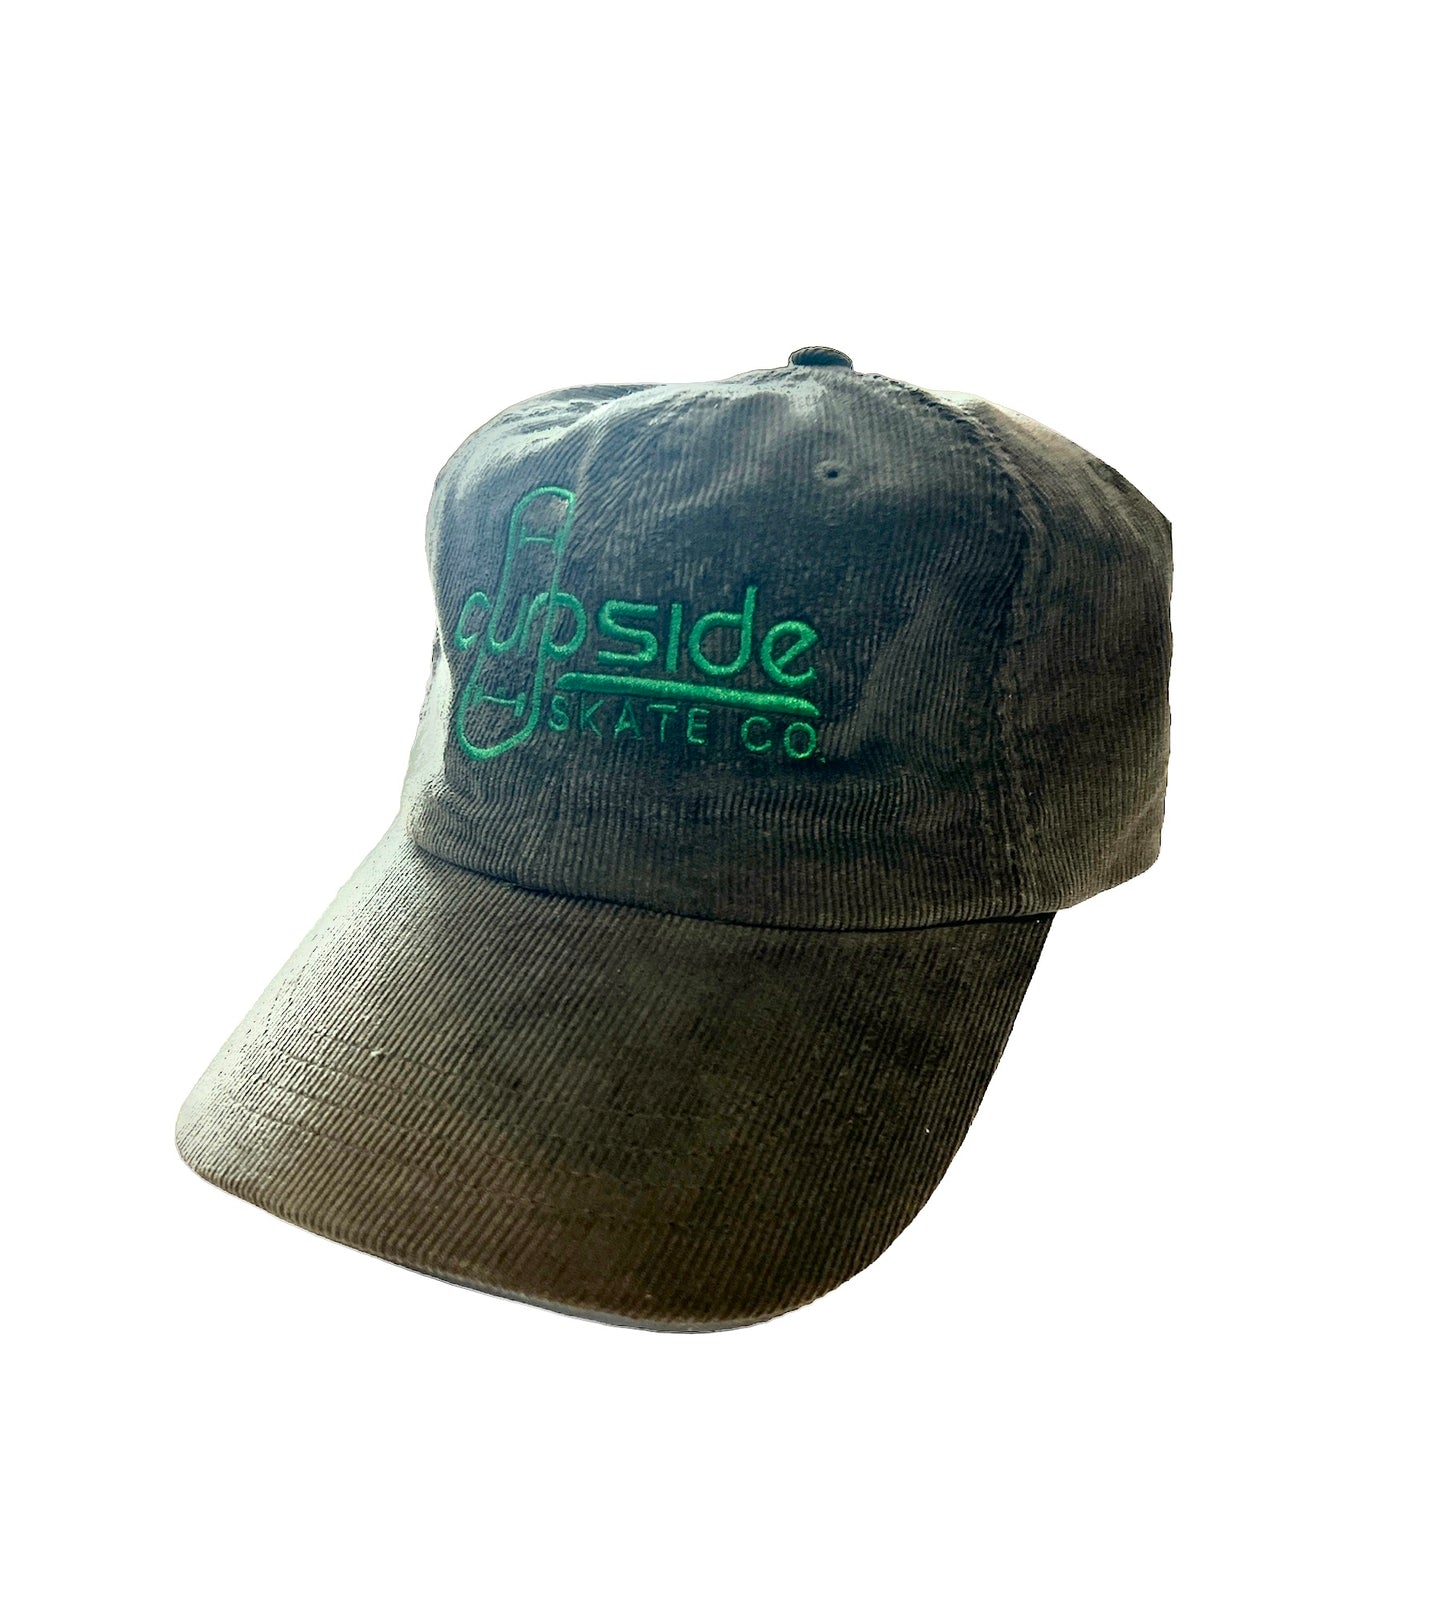 Curbside “Dad” Hats